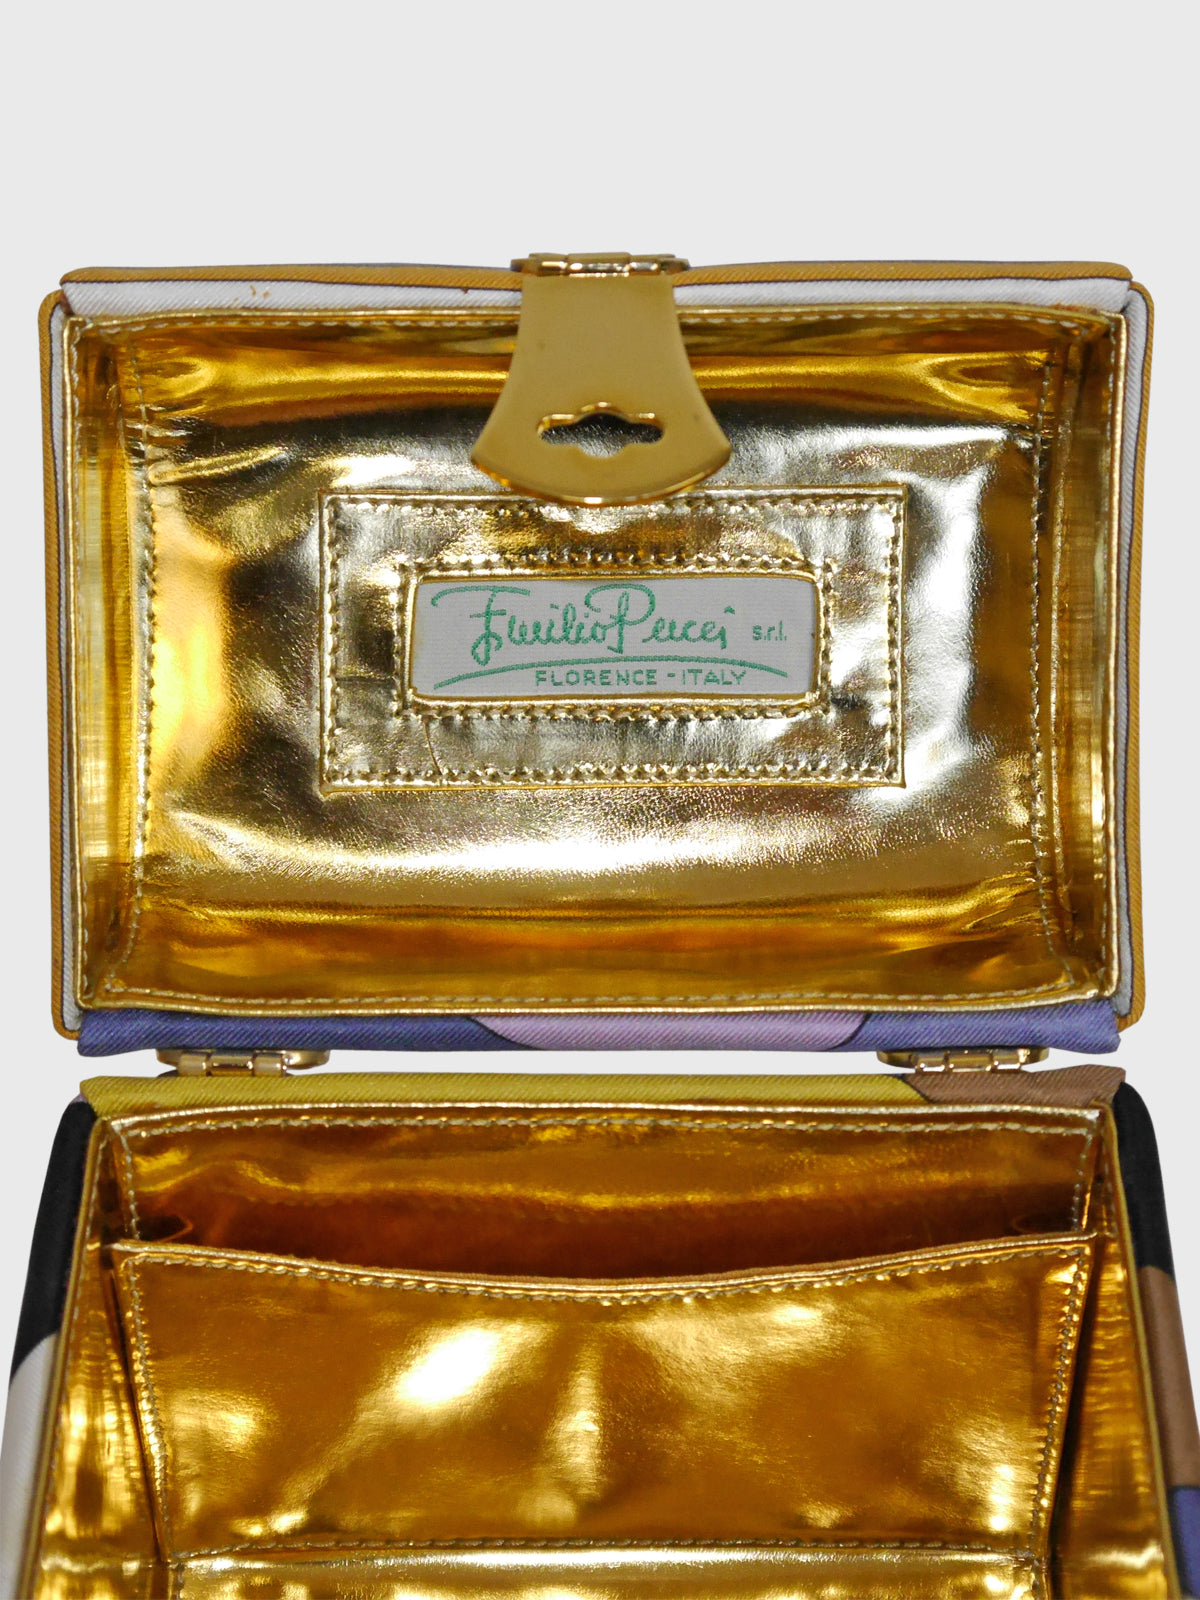 EMILIO PUCCI Documented Fiocchetti Hard Case Box Handbag